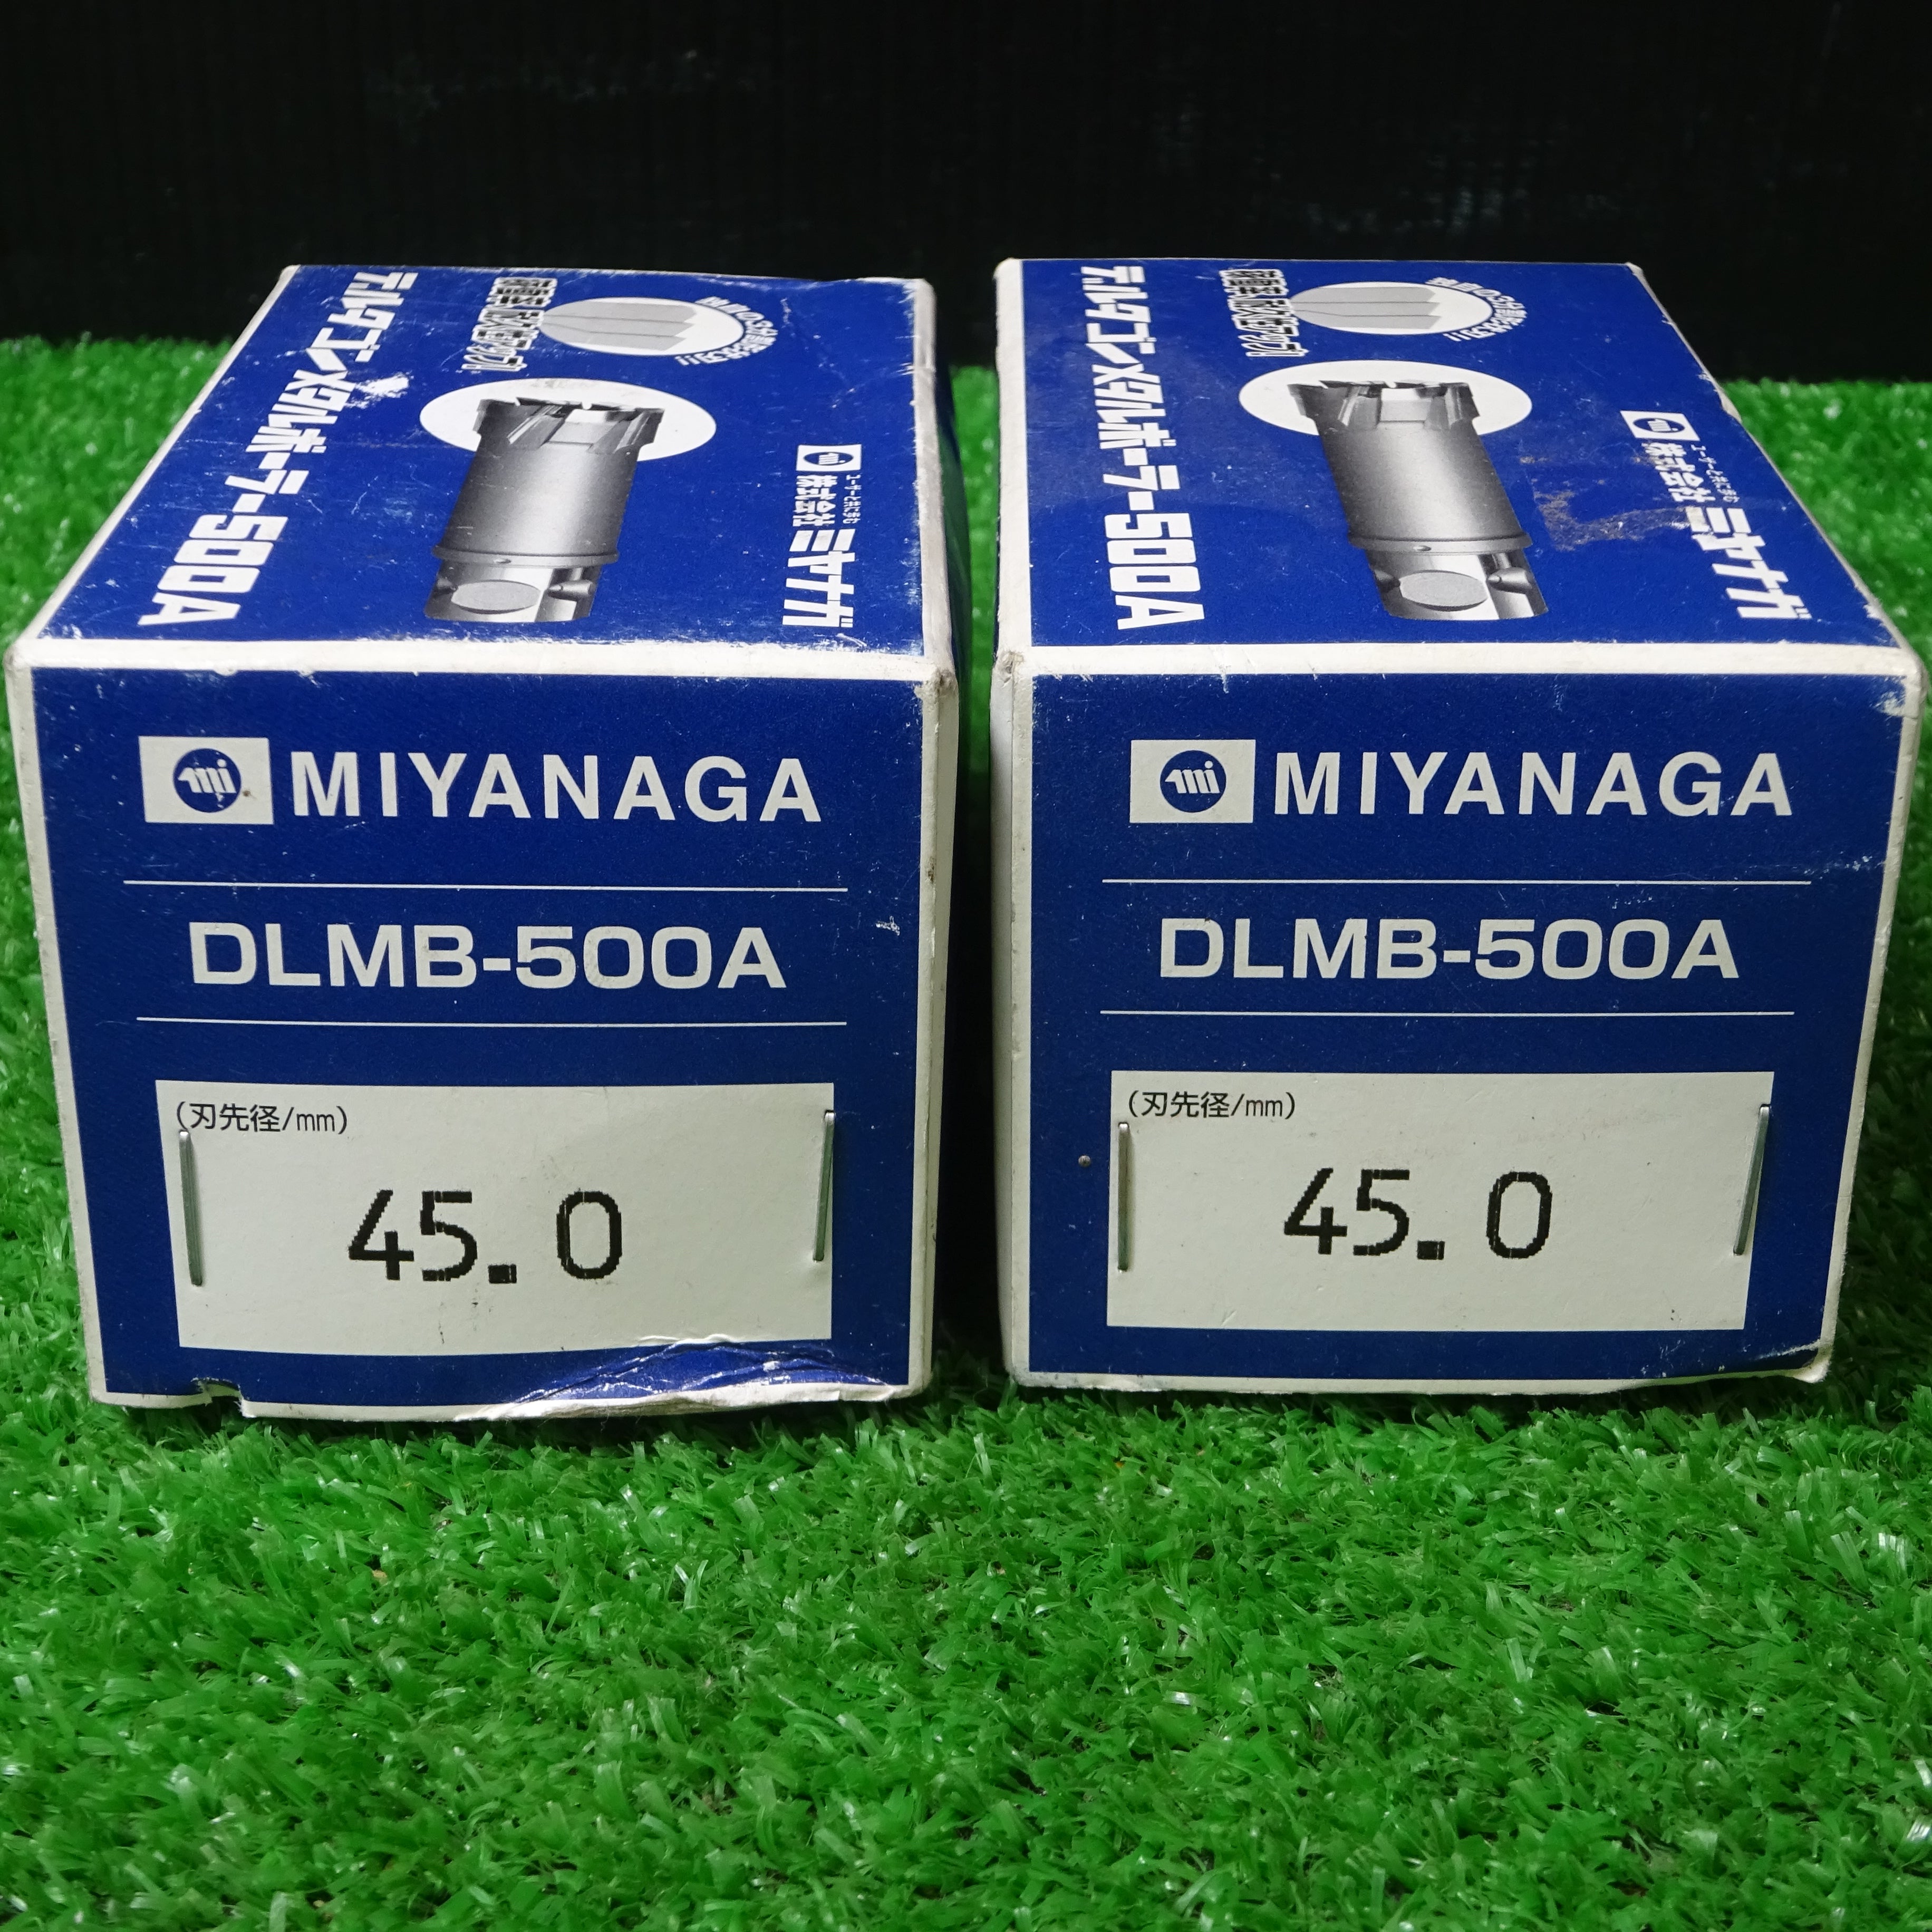 週間売れ筋 DLMB50A59 DLMB50A ミヤナガ デルタゴン デルタゴンメタル